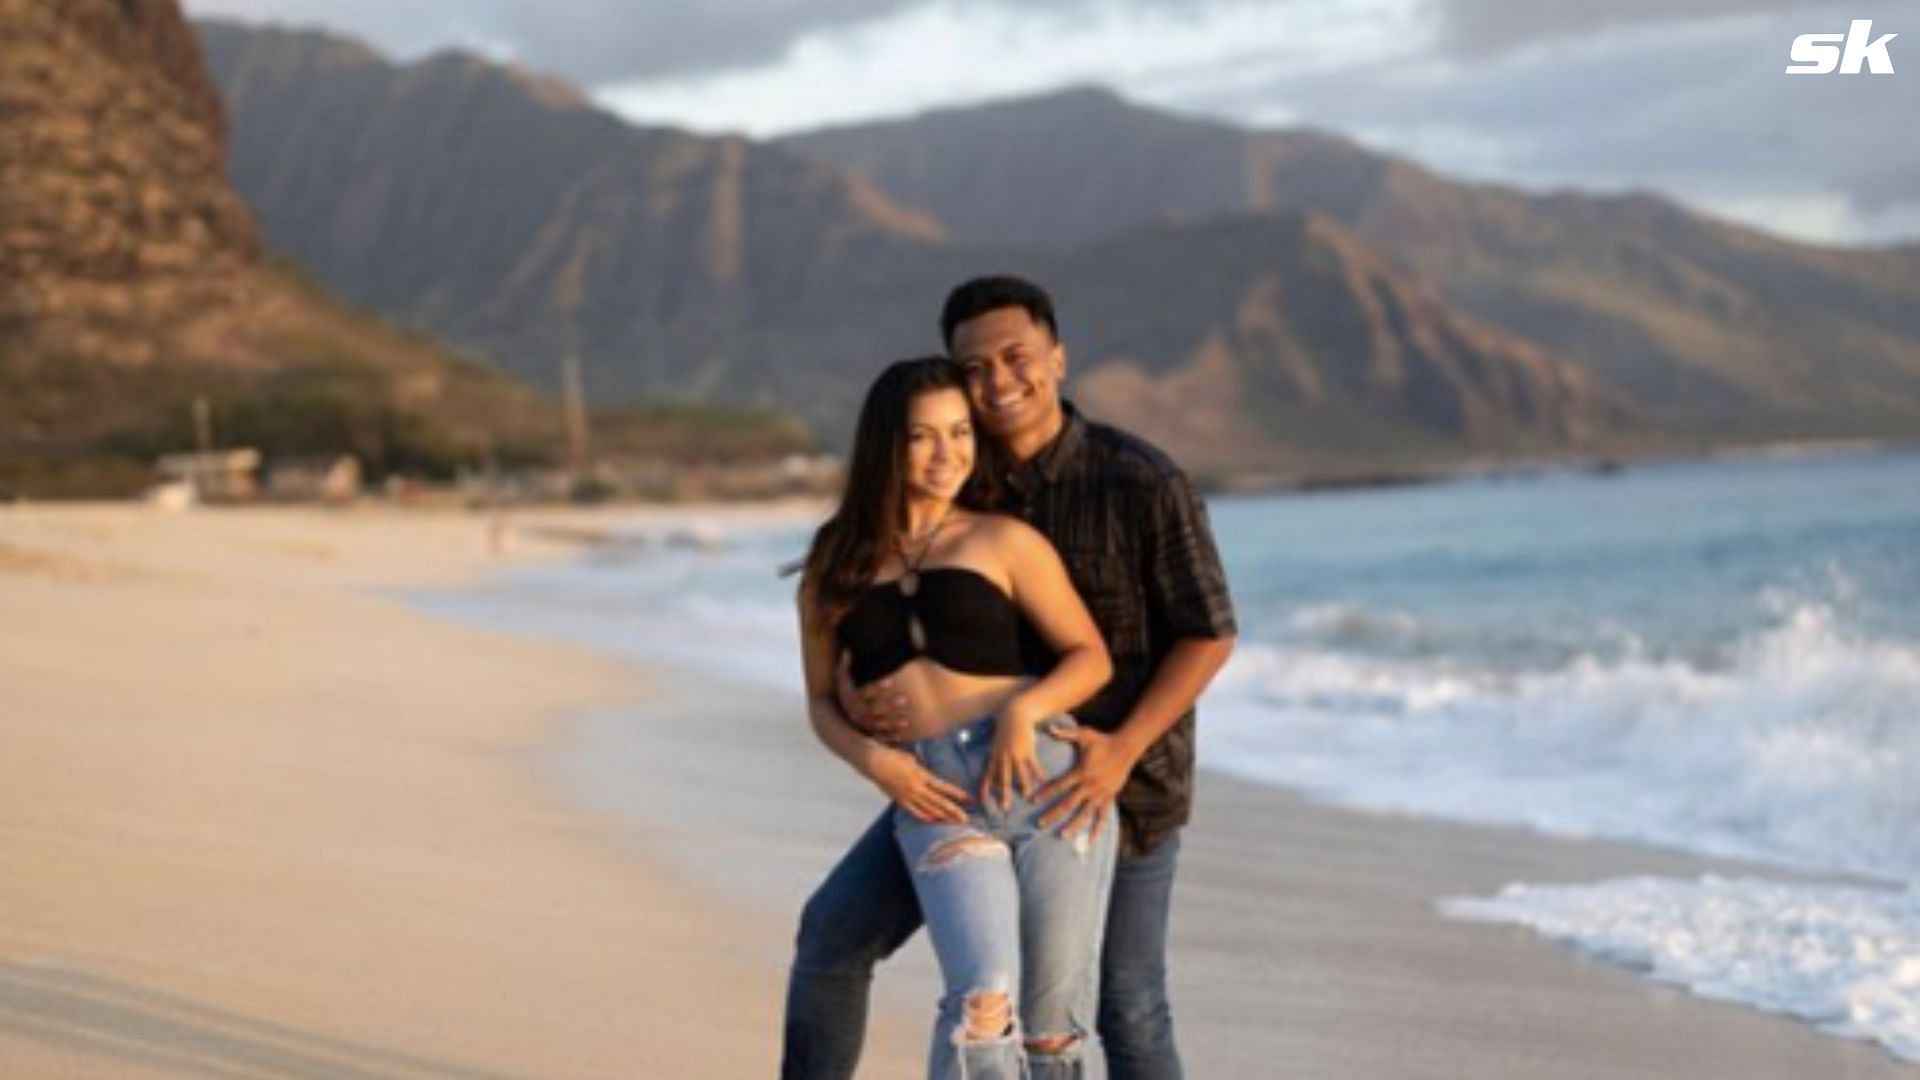 Kamalani is dating Hawaii-based musician, Dillon Pakele.